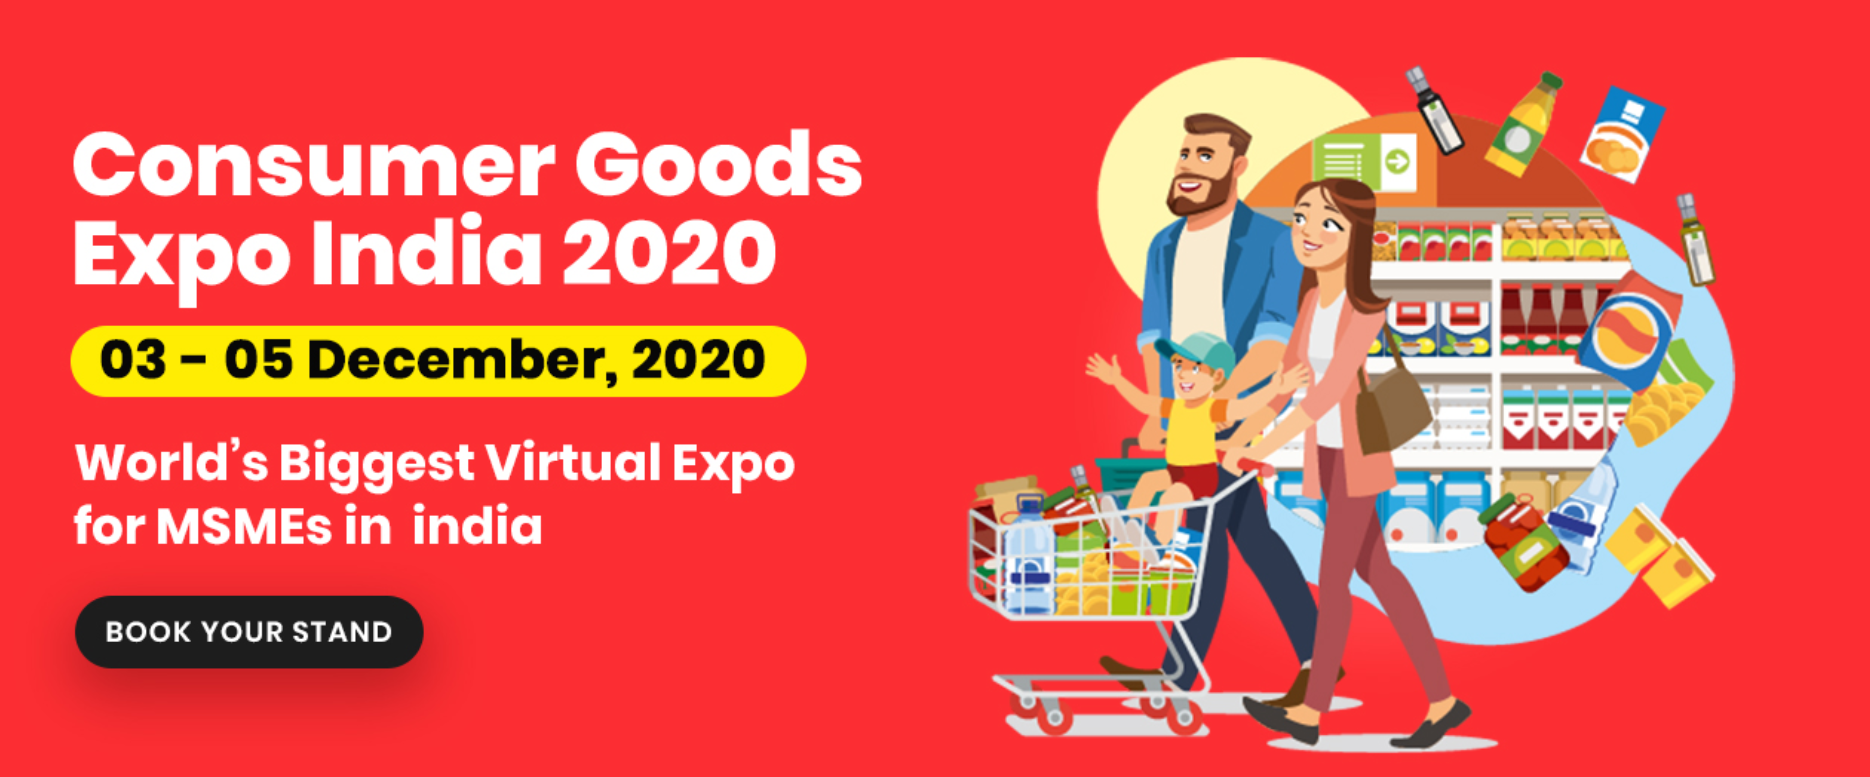 Consumer Goods Expo India 2020, Gautam Buddh Nagar, Uttar Pradesh, India